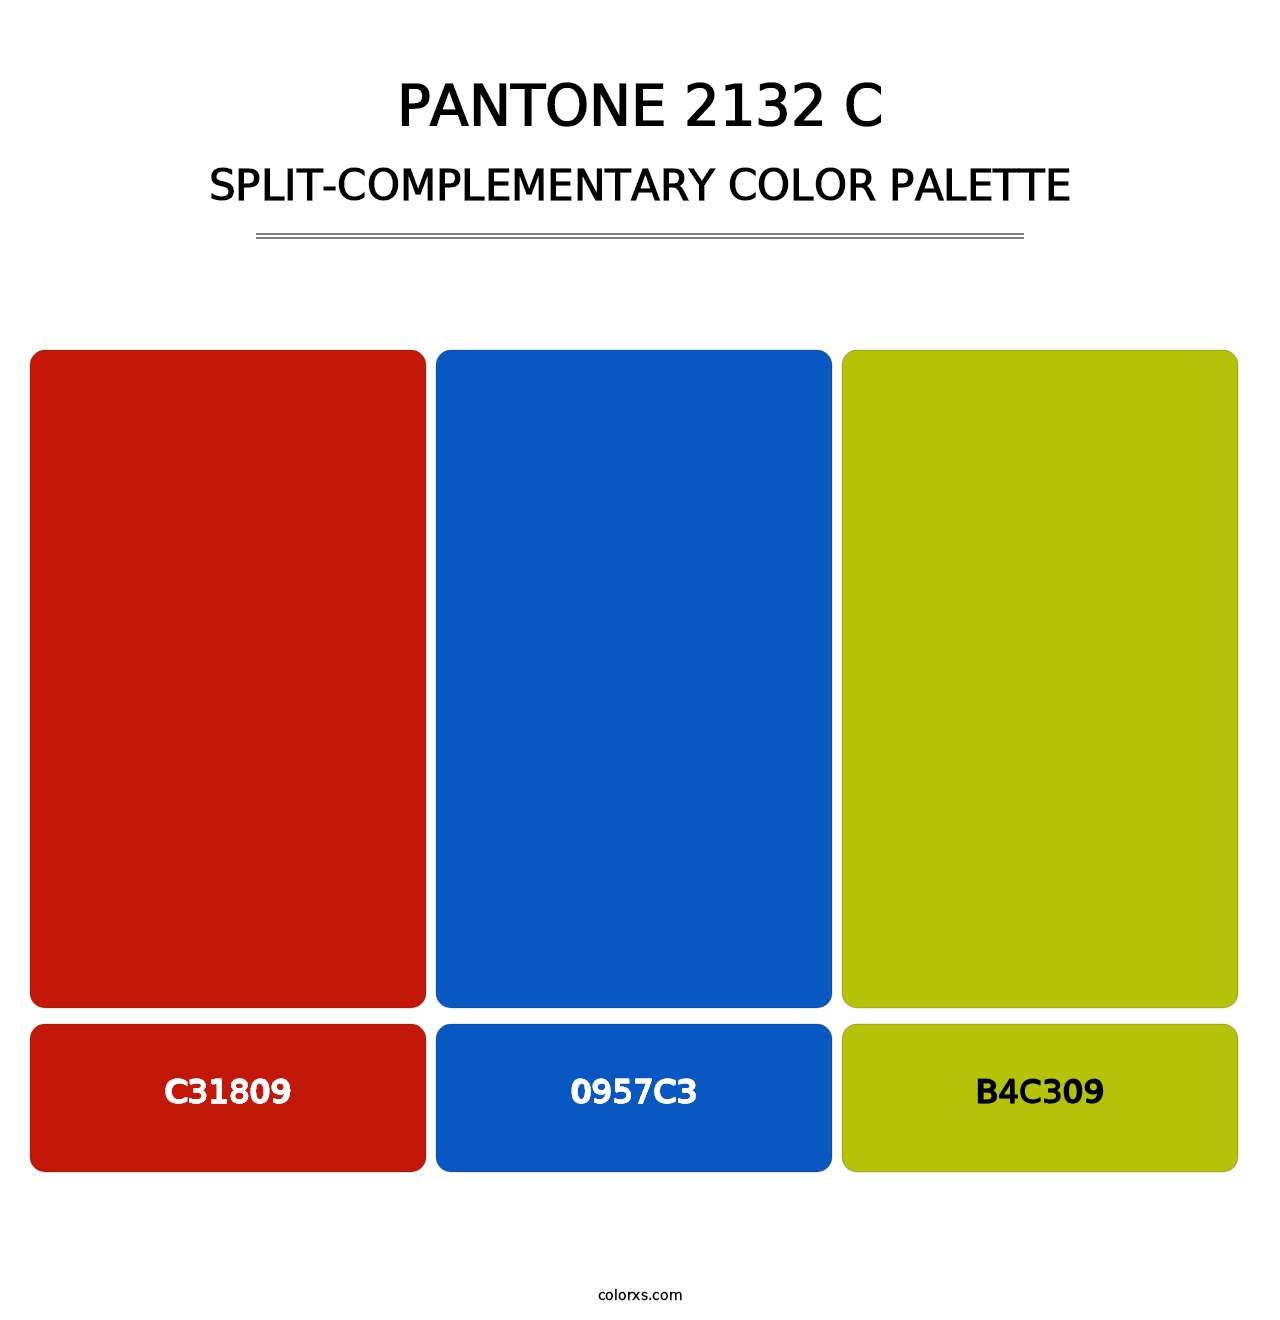 PANTONE 2132 C - Split-Complementary Color Palette